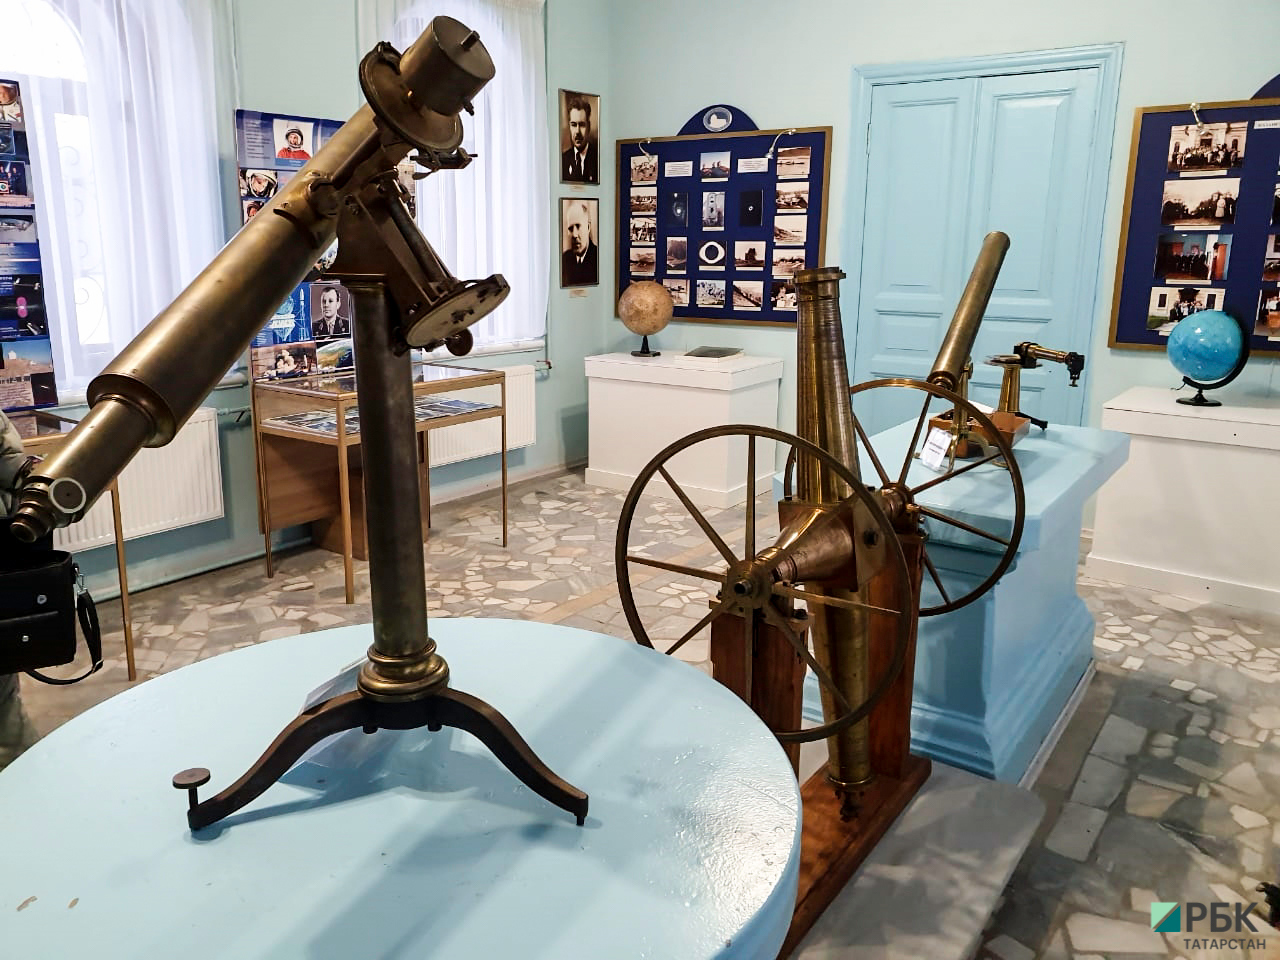 Тройственный союз: казанские обсерватории могут войти в ЮНЕСКО в тандеме